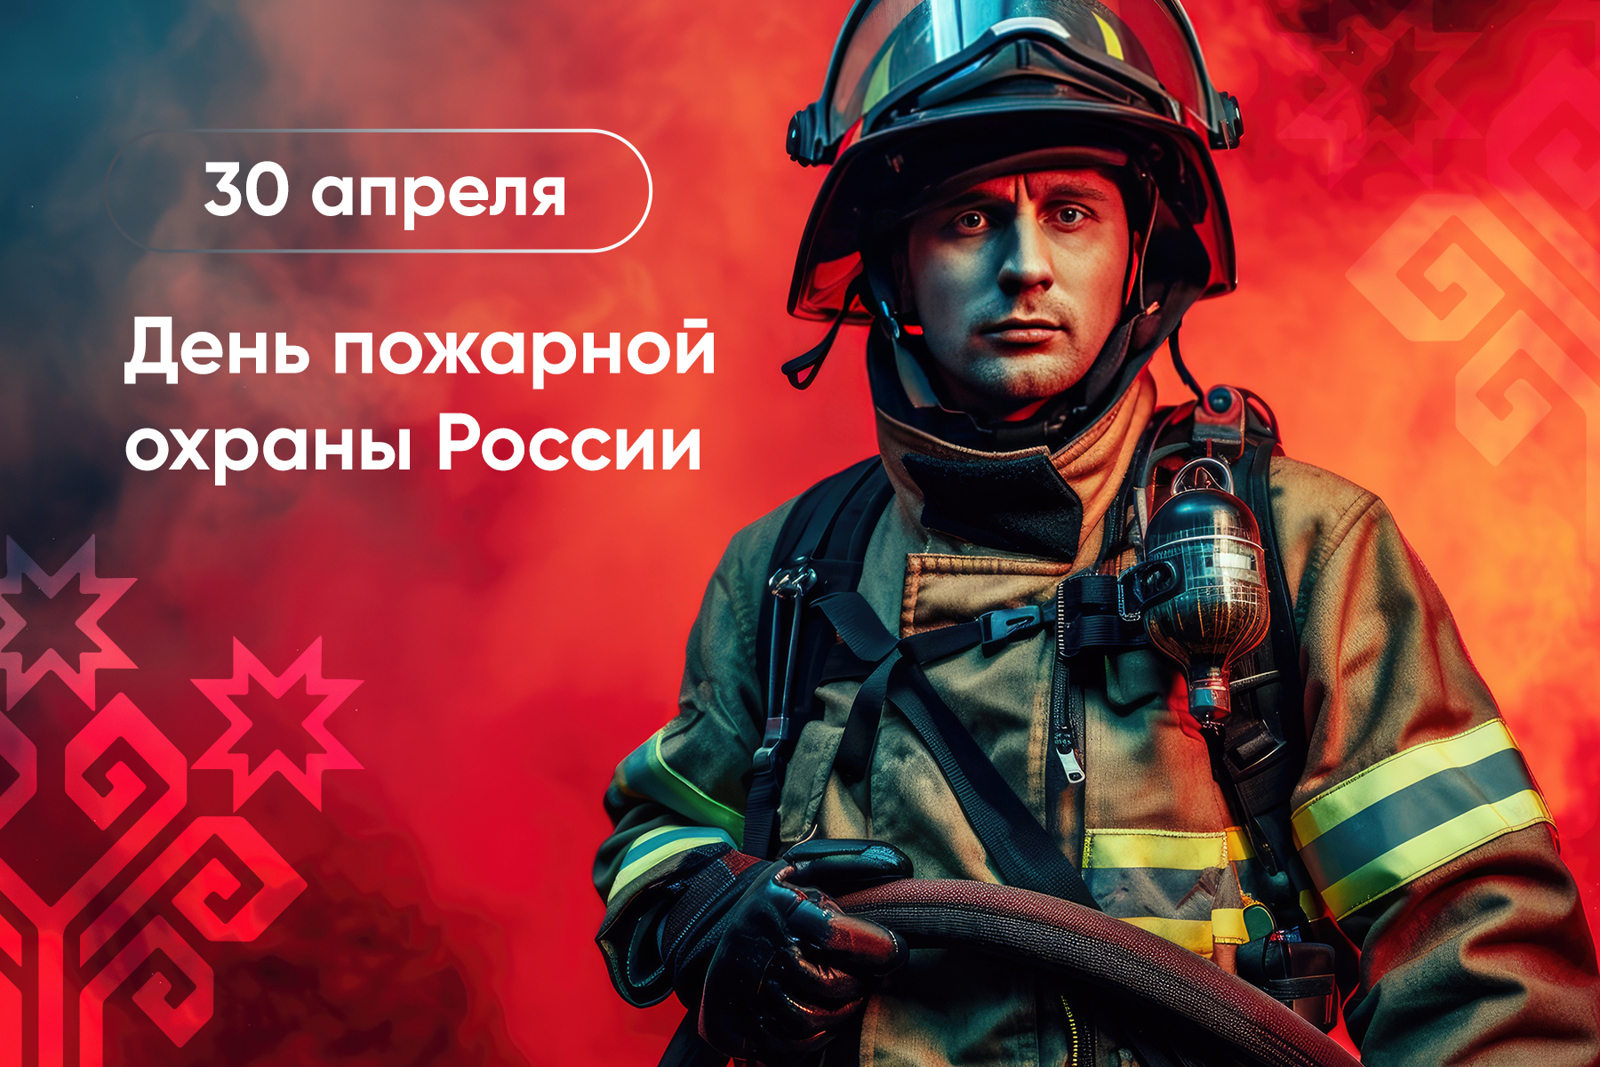 Олег Николаев поздравляет с Днём пожарной охраны России